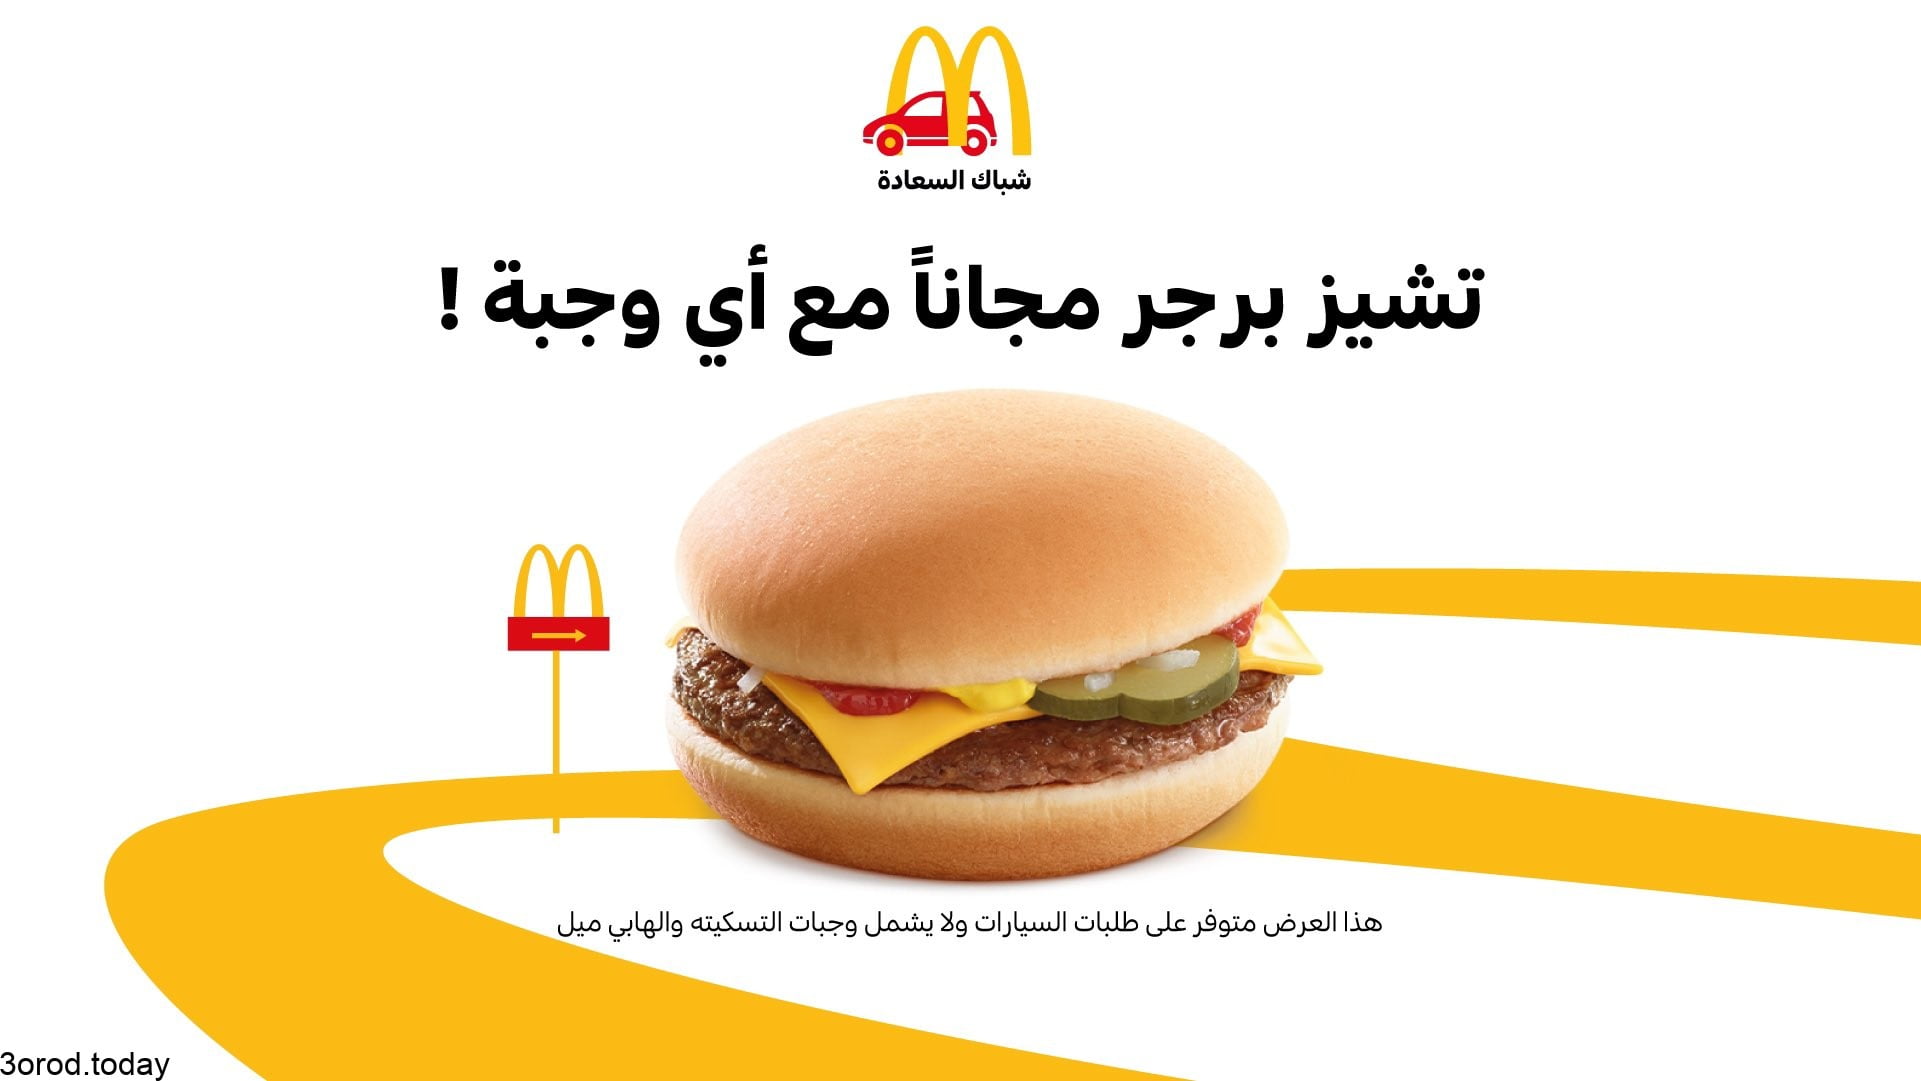 E9oj0sqXIAEH2QE - عروض المطاعم : عروض مطعم ماكدونالدز السعودية - الوسطى والشرقية والشمالية علي تشيز برجر مجاناً مع كل وجبة